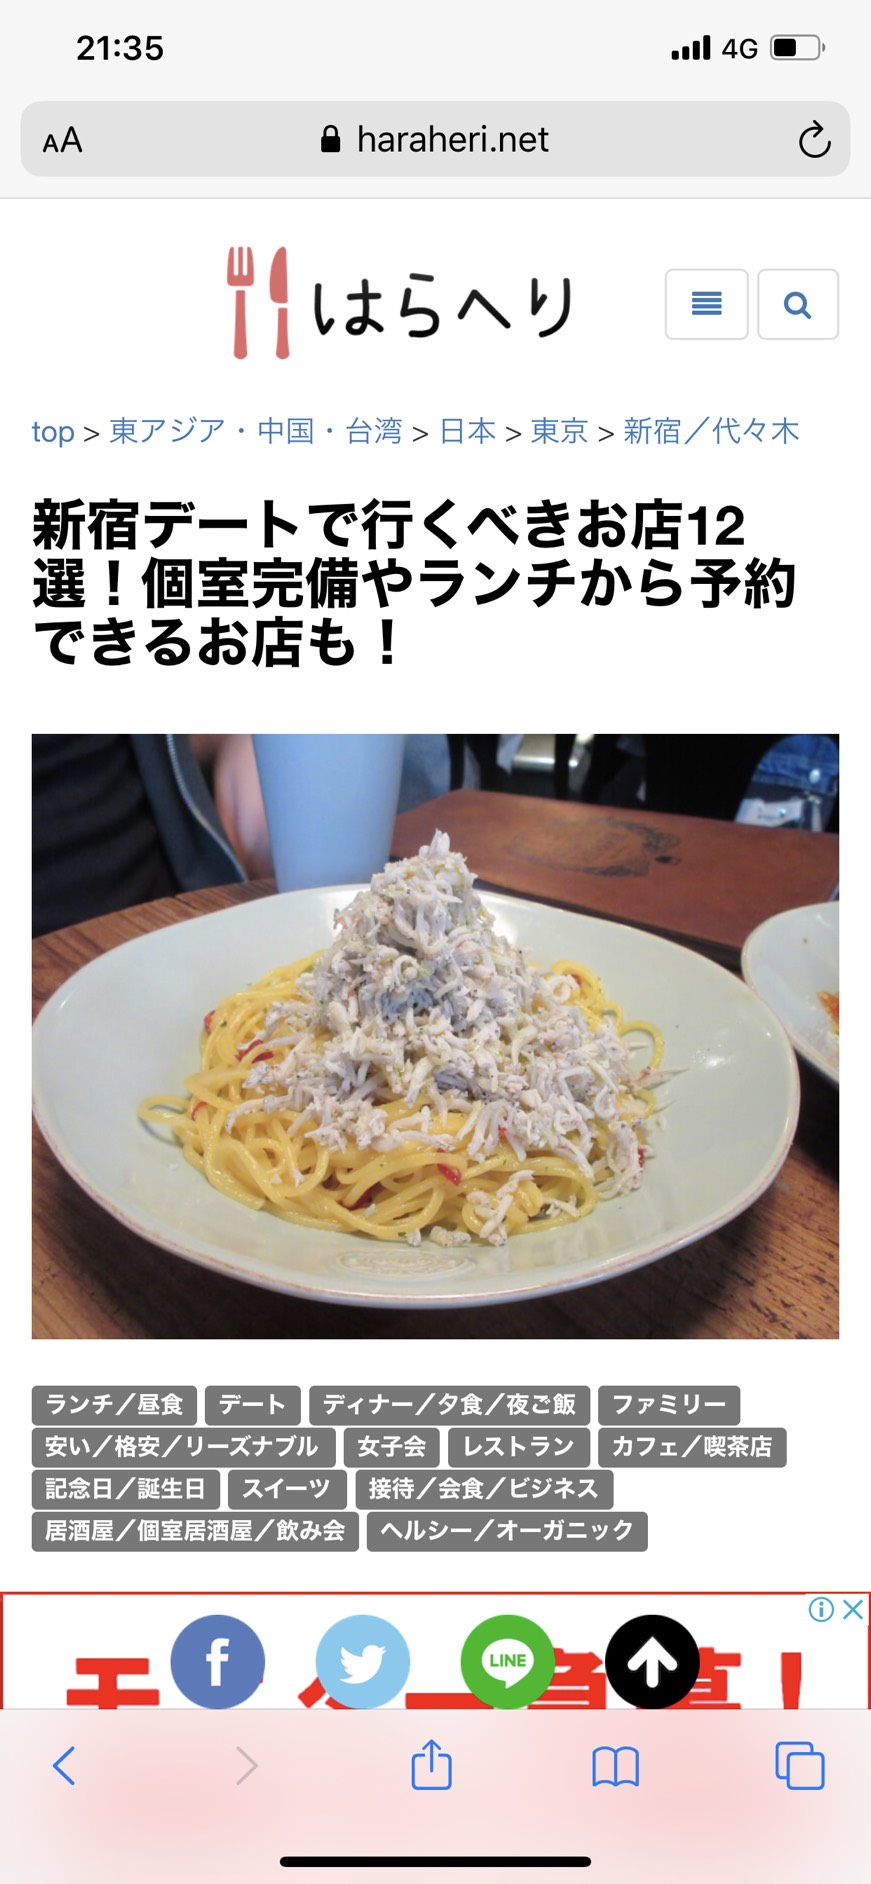 本日もディナー予約可能 新宿クイントで 本格イタリアン を ディナー予約も再開中 東京食彩株式会社